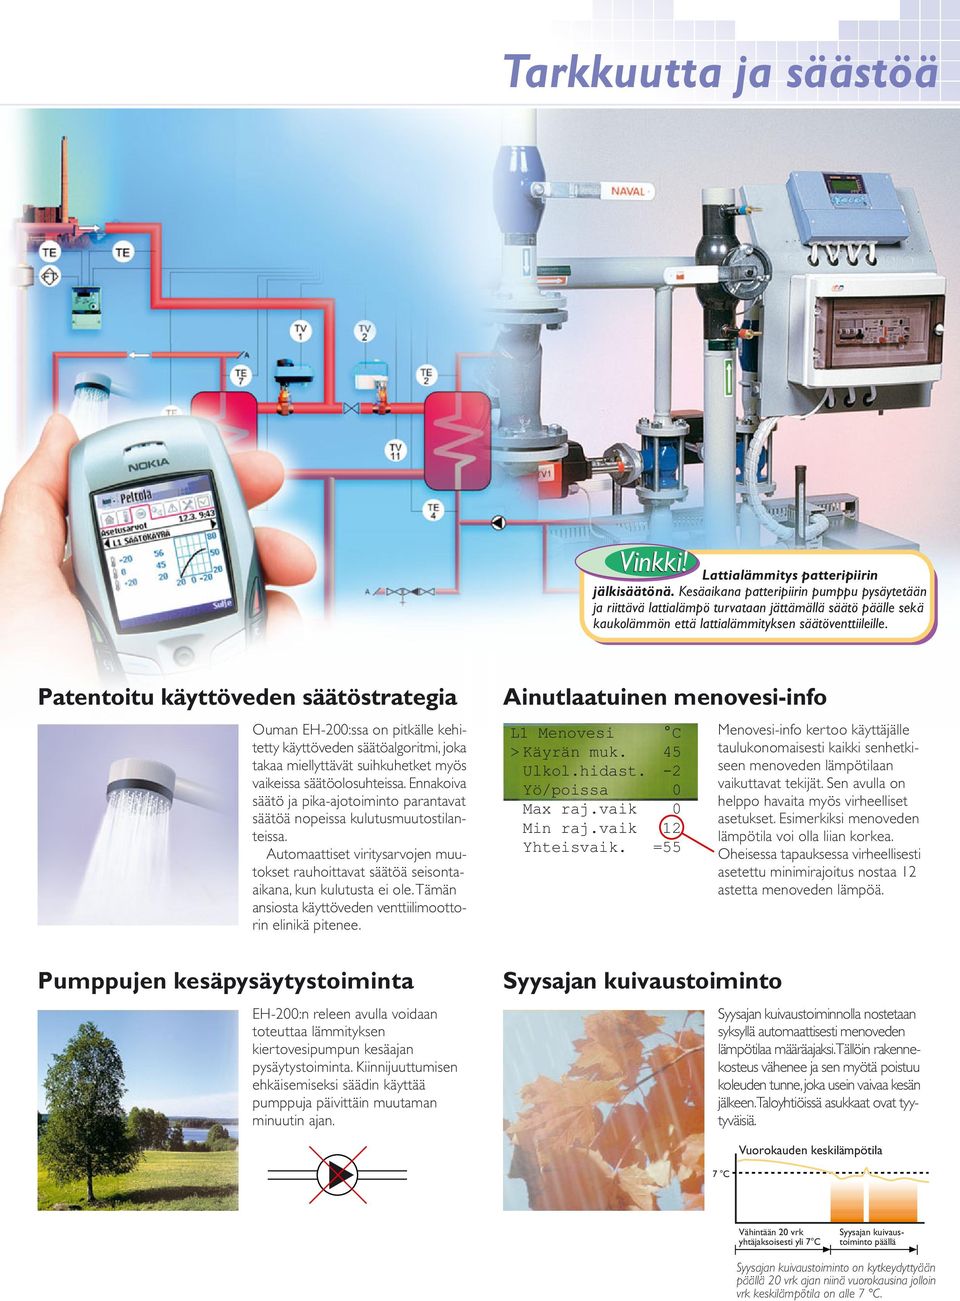 Patentoitu käyttöveden säätöstrategia Ouman EH-200:ssa on pitkälle kehitetty käyttöveden säätöalgoritmi, joka takaa miellyttävät suihkuhetket myös vaikeissa säätöolosuhteissa.